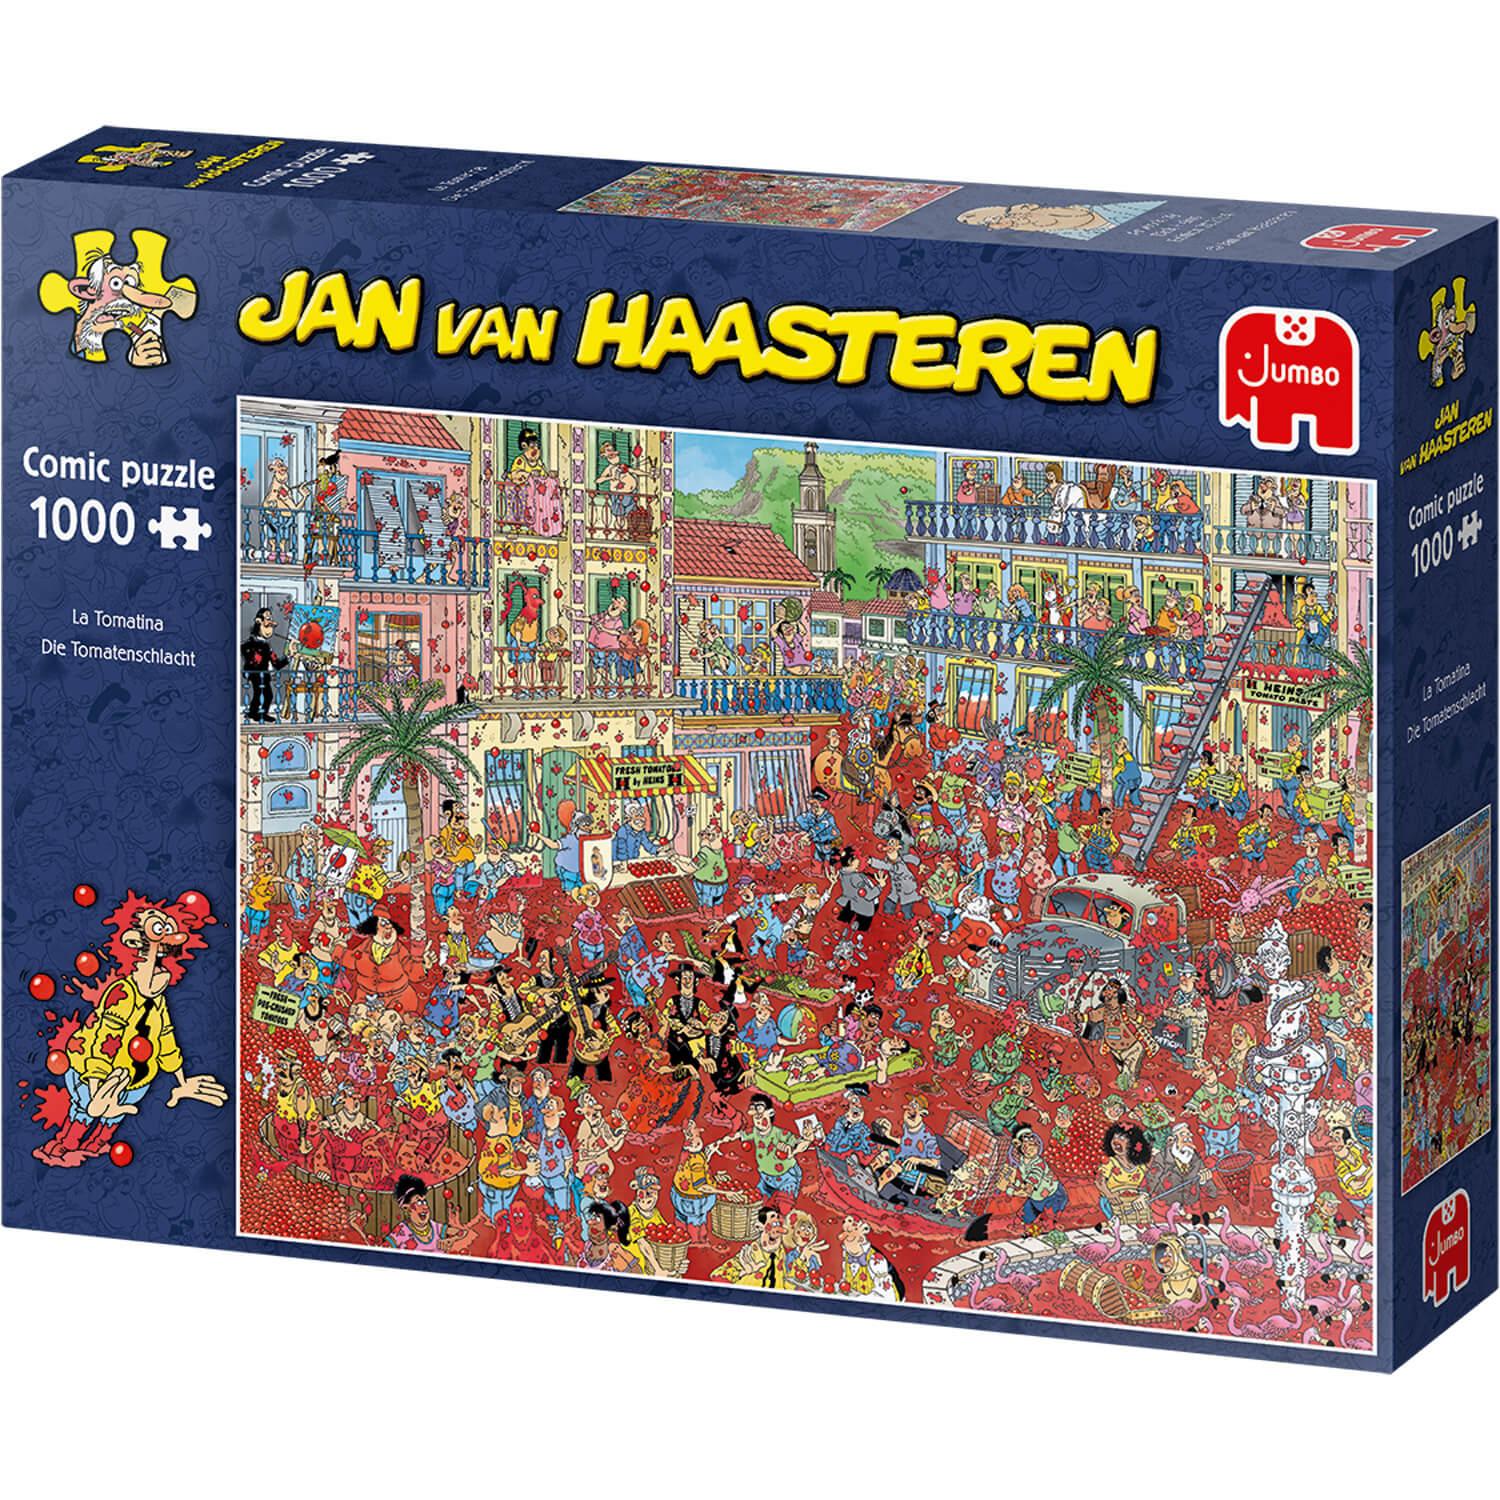 Jan van Haasteren - Le magasin de jouets Puzzle 1000 pièces